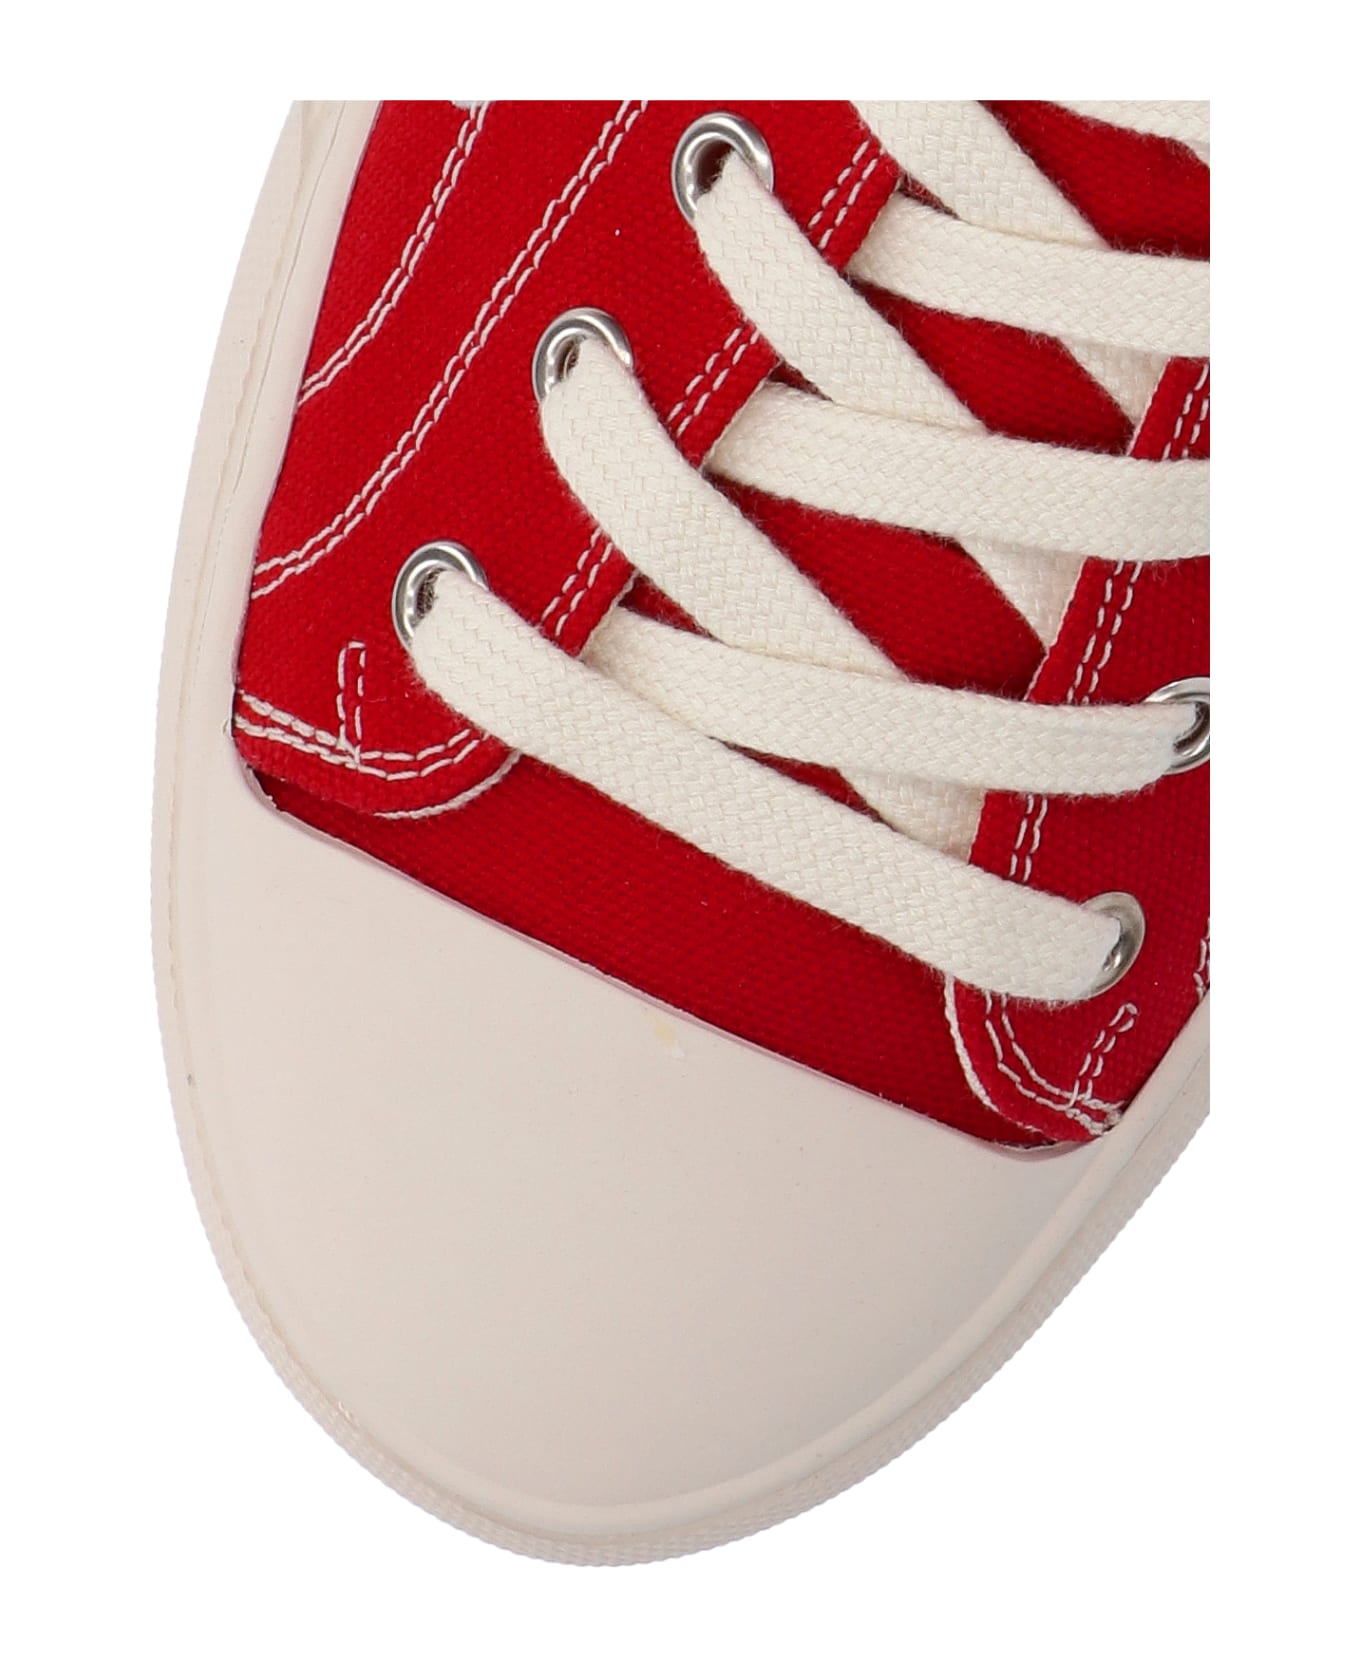 Vivienne Westwood "plimsoll Low Top 2.0" Sneakers - Red スニーカー